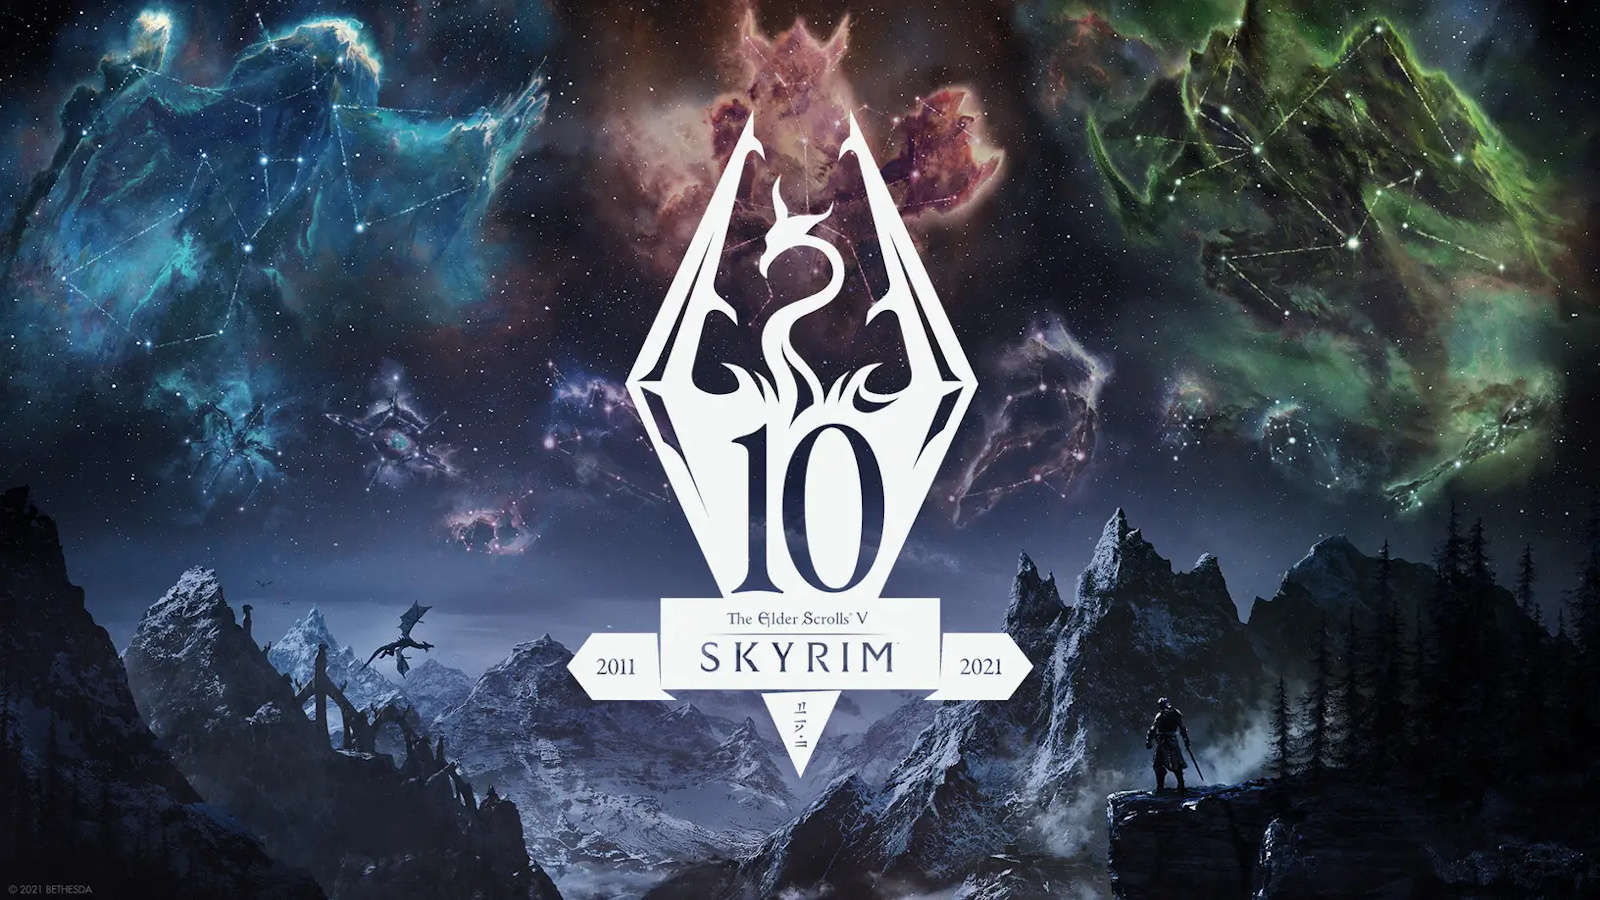 The Elder Scrolls 5: Skyrim – Người hâm mộ xây dựng Whiterun trong The Sims 4